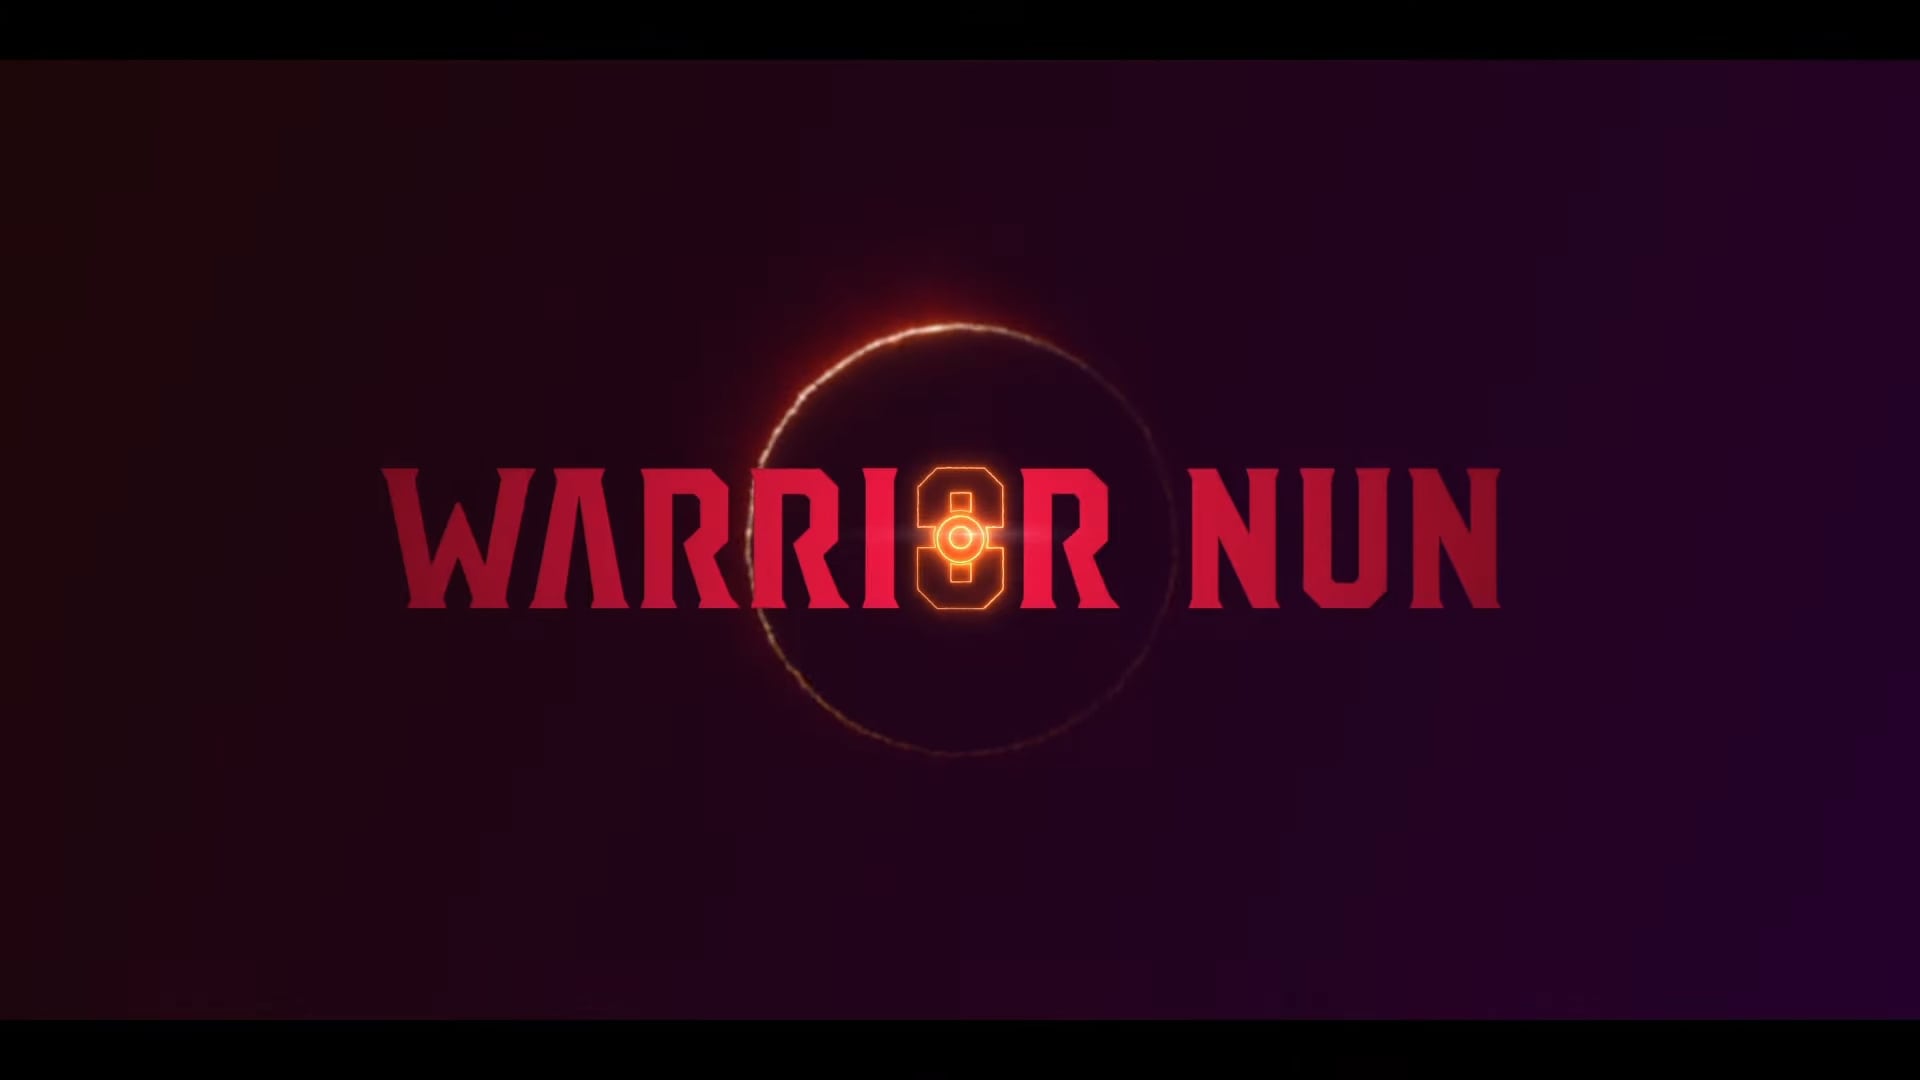 Netflix Warrior Nun Trailer, Netflix Fantasy Series, Netflix Drama Series, Netflix Mystery Series, Coming to Netflix in July 2020